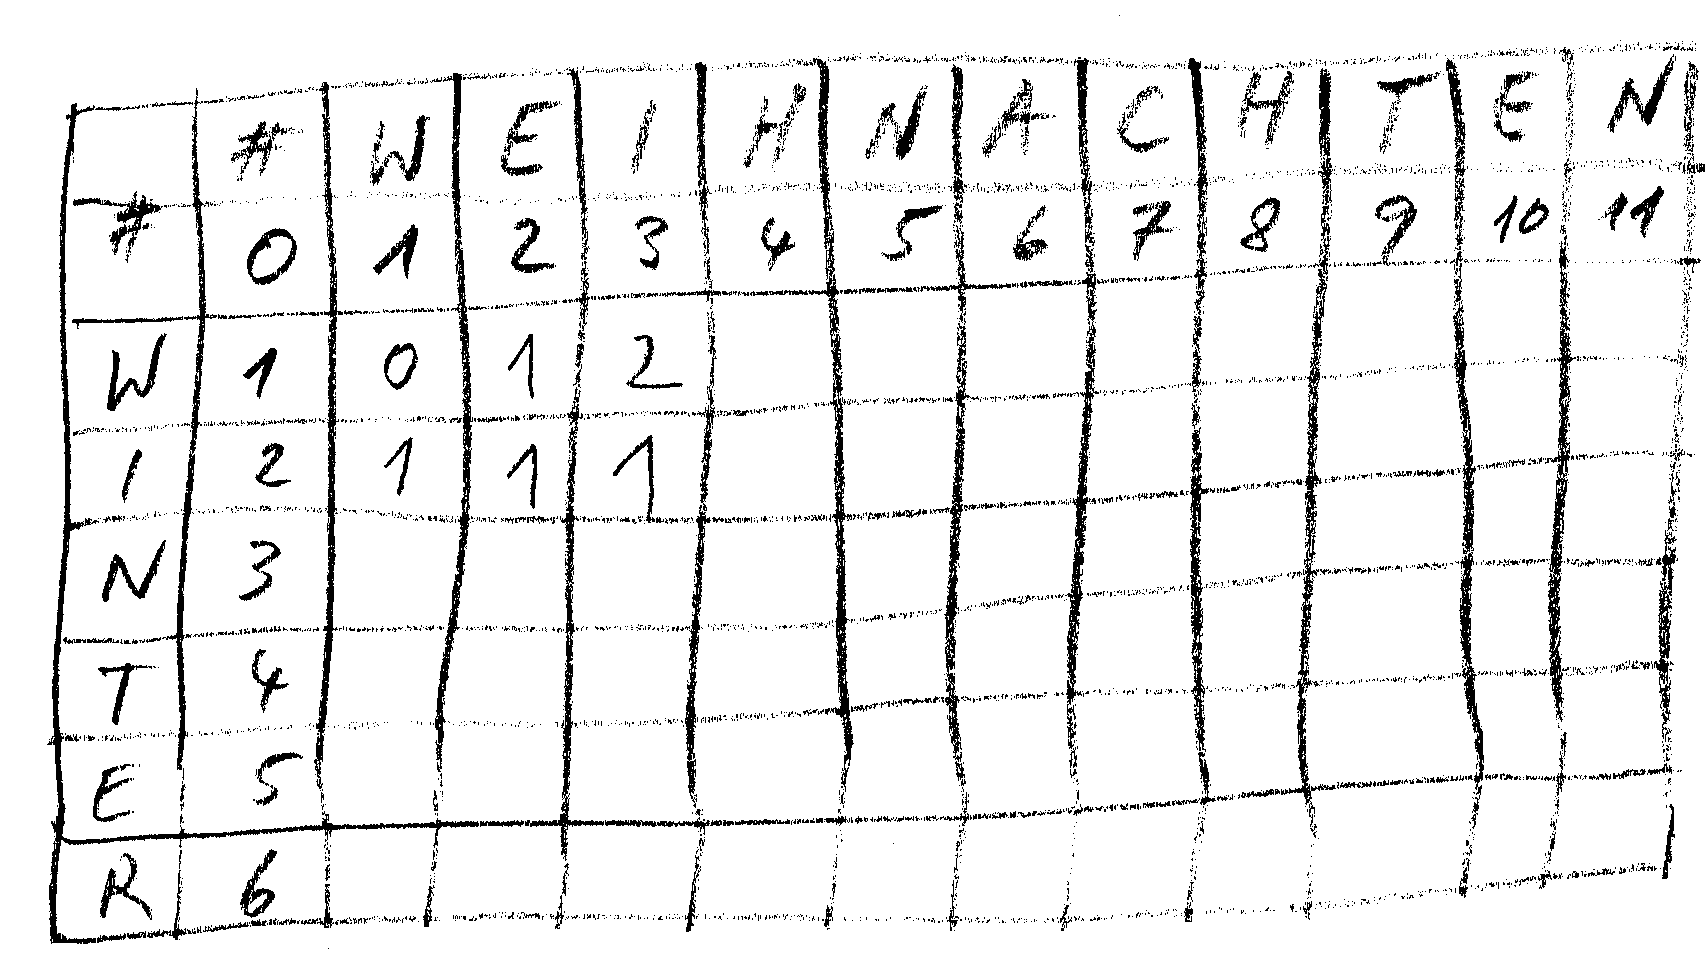 Matrix mit den Editierdistanzen zwischen WINTER und WEIHNACHTEN, erste Einträge ausgefüllt